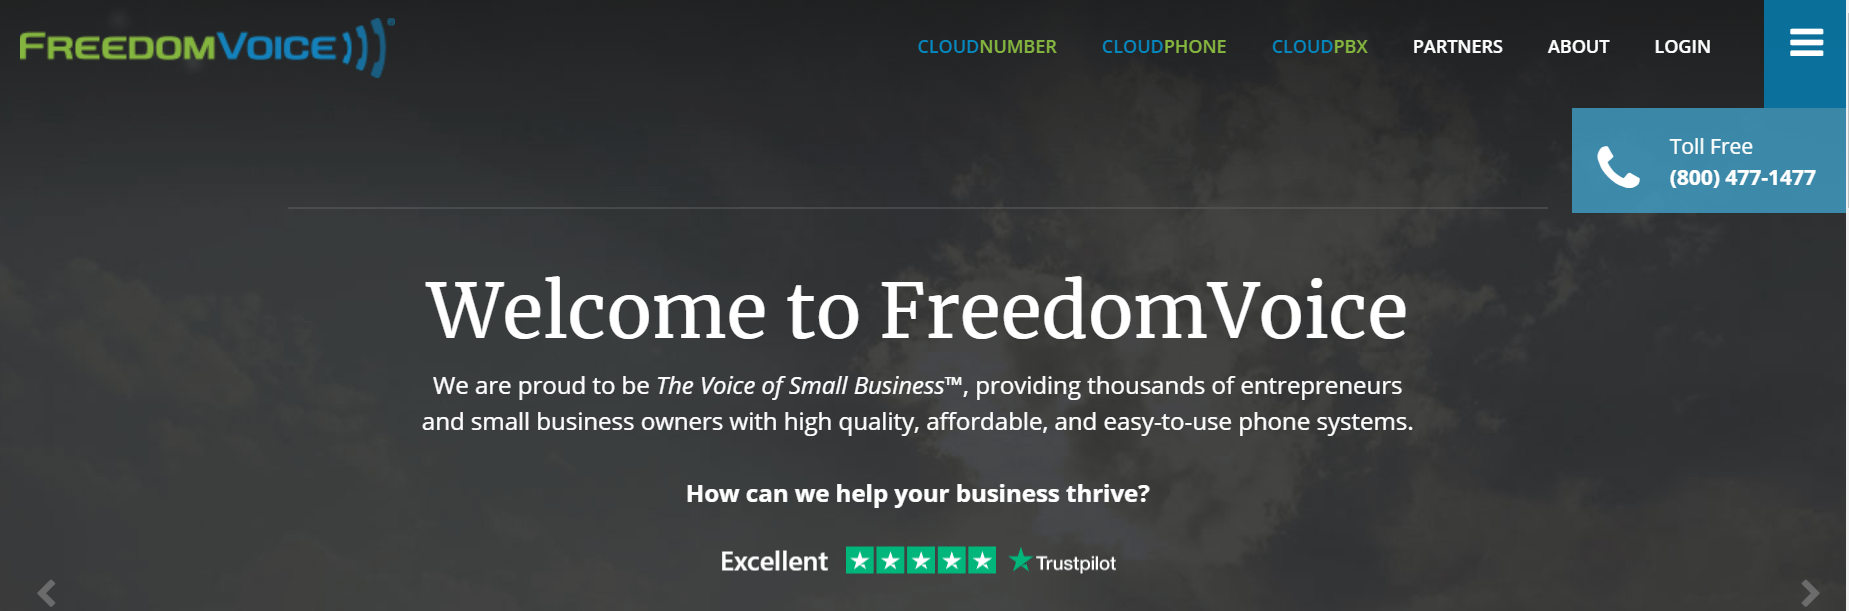 FreedomVoice主页。